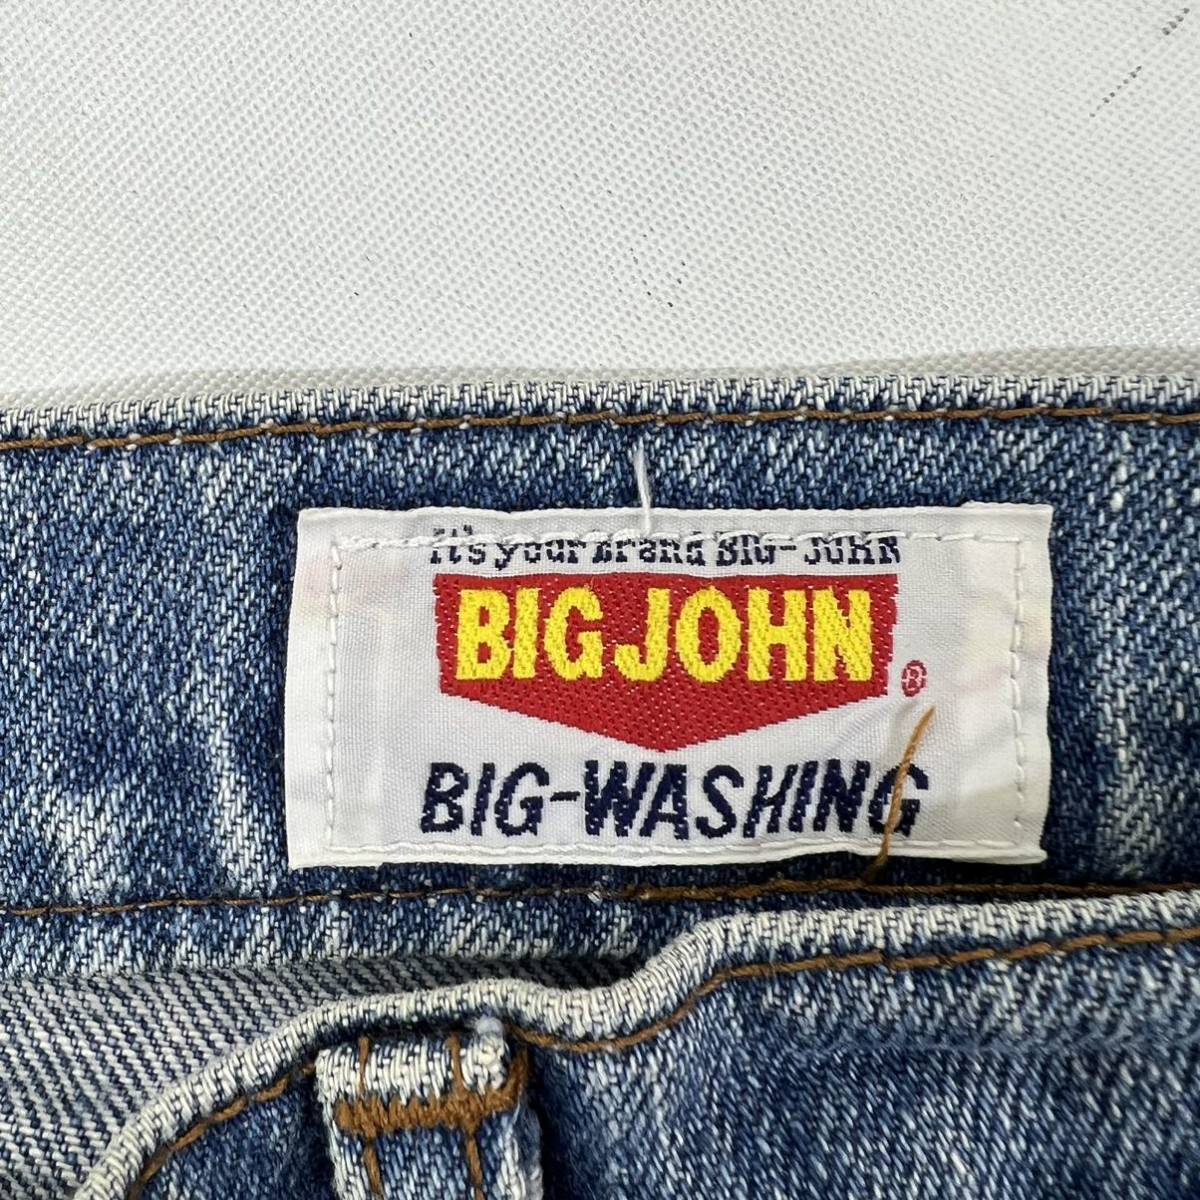 BIG JOHN * мягкий длина ..* Denim брюки голубой джинсы W38 84cm American Casual Street взрослый casual б/у одежда популярный Big John #Ja7118